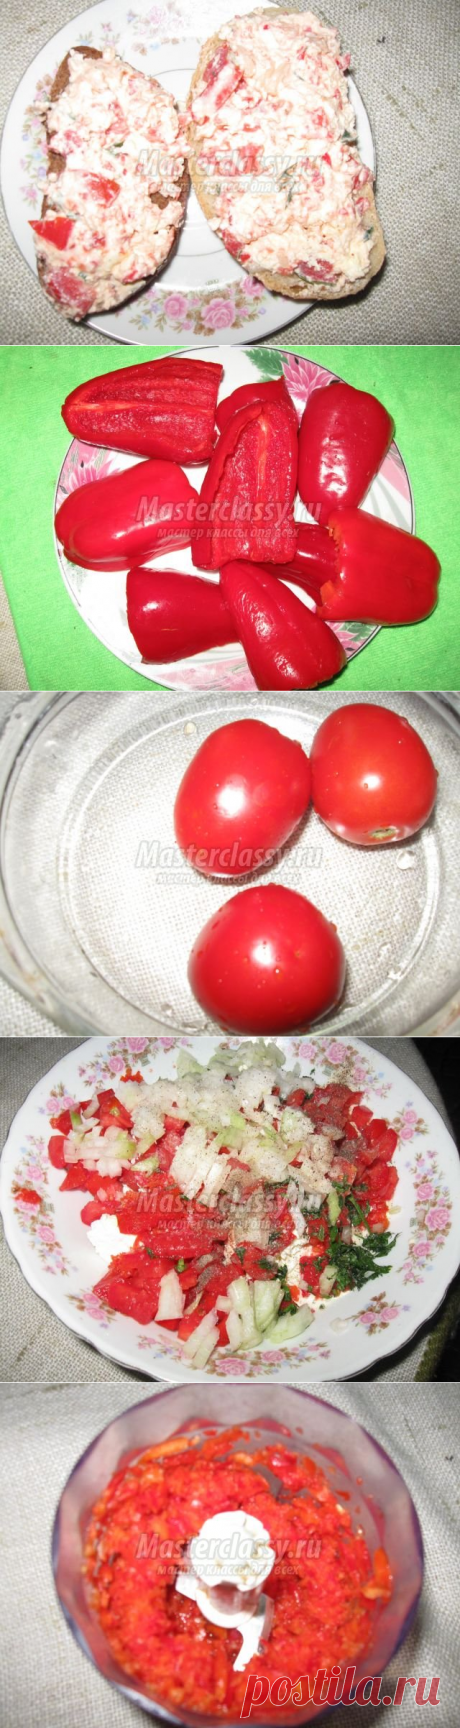 Салат из творога и перца «Витаминная бомба». Фоторецепт / Мастерклассы Блоги